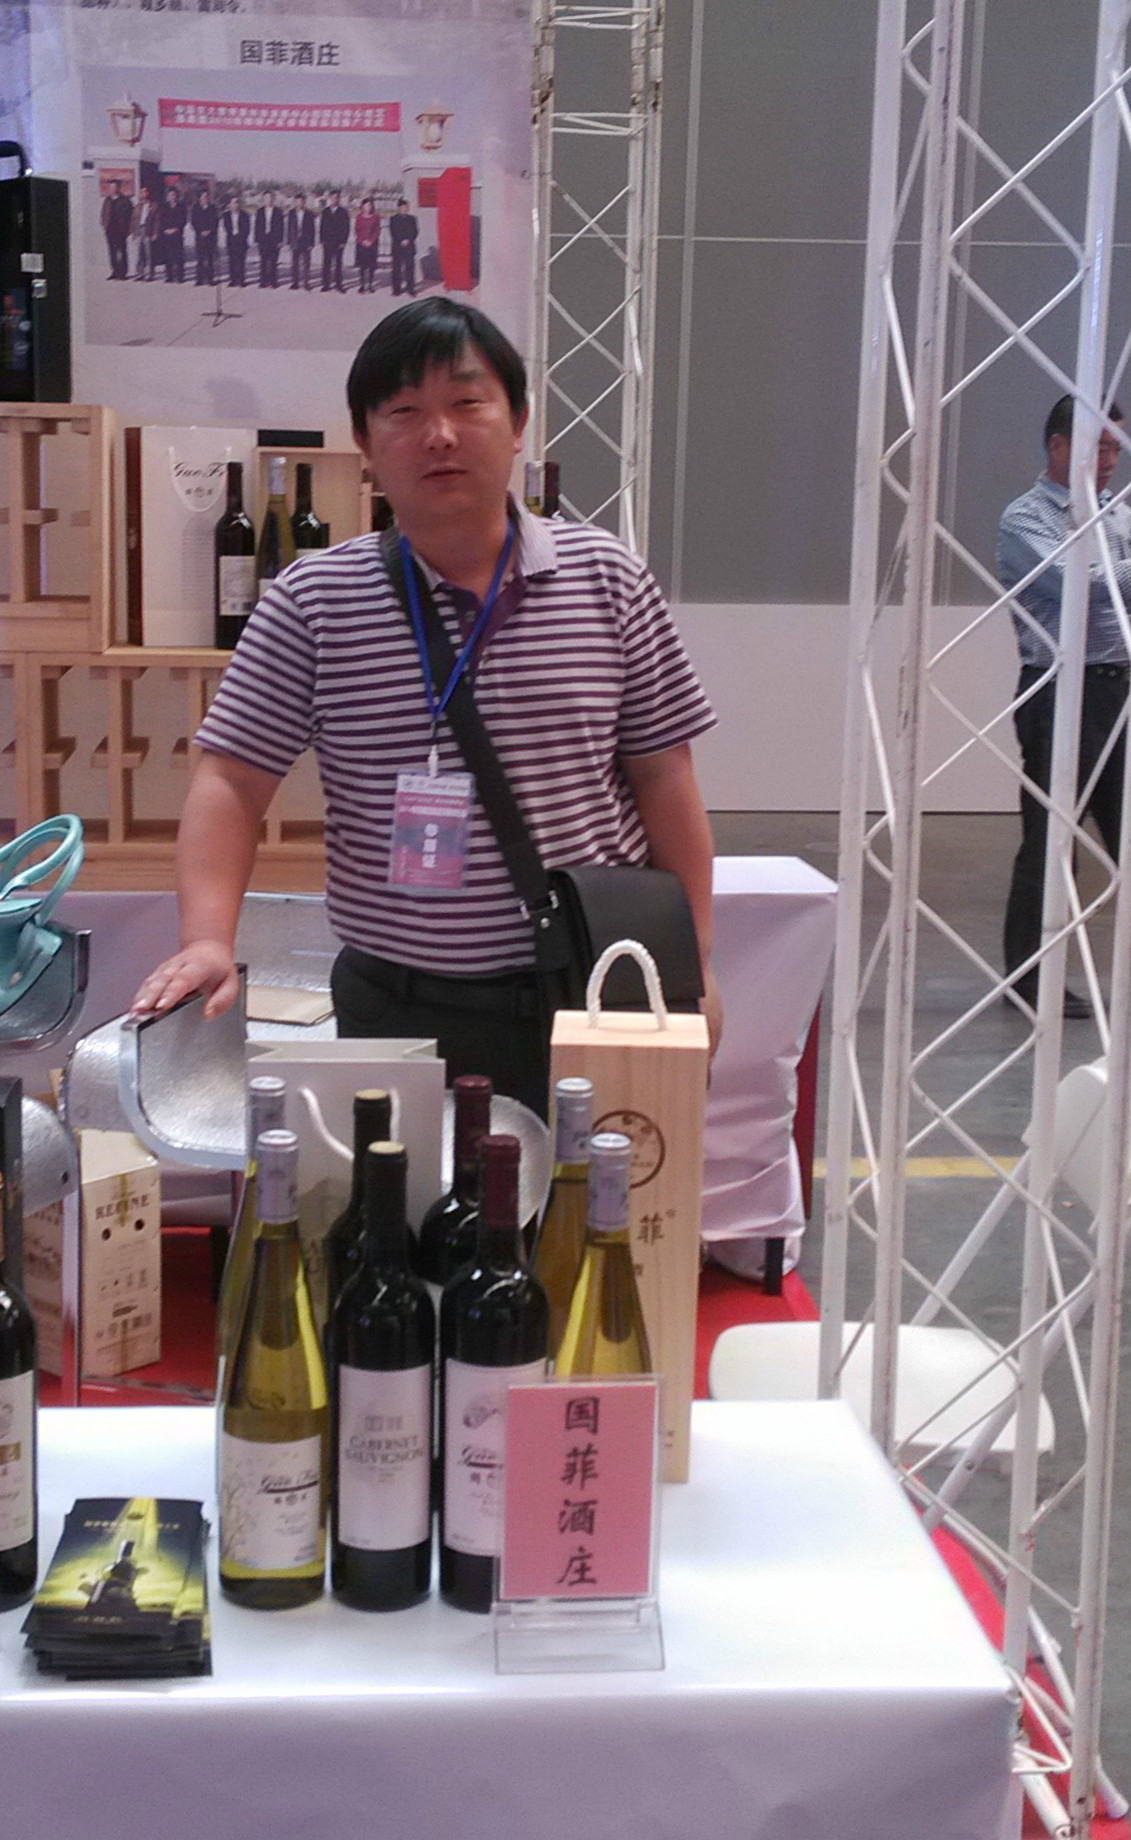 Chinese Winemakers(51)Cheng Zhenglong:Because Love Wine